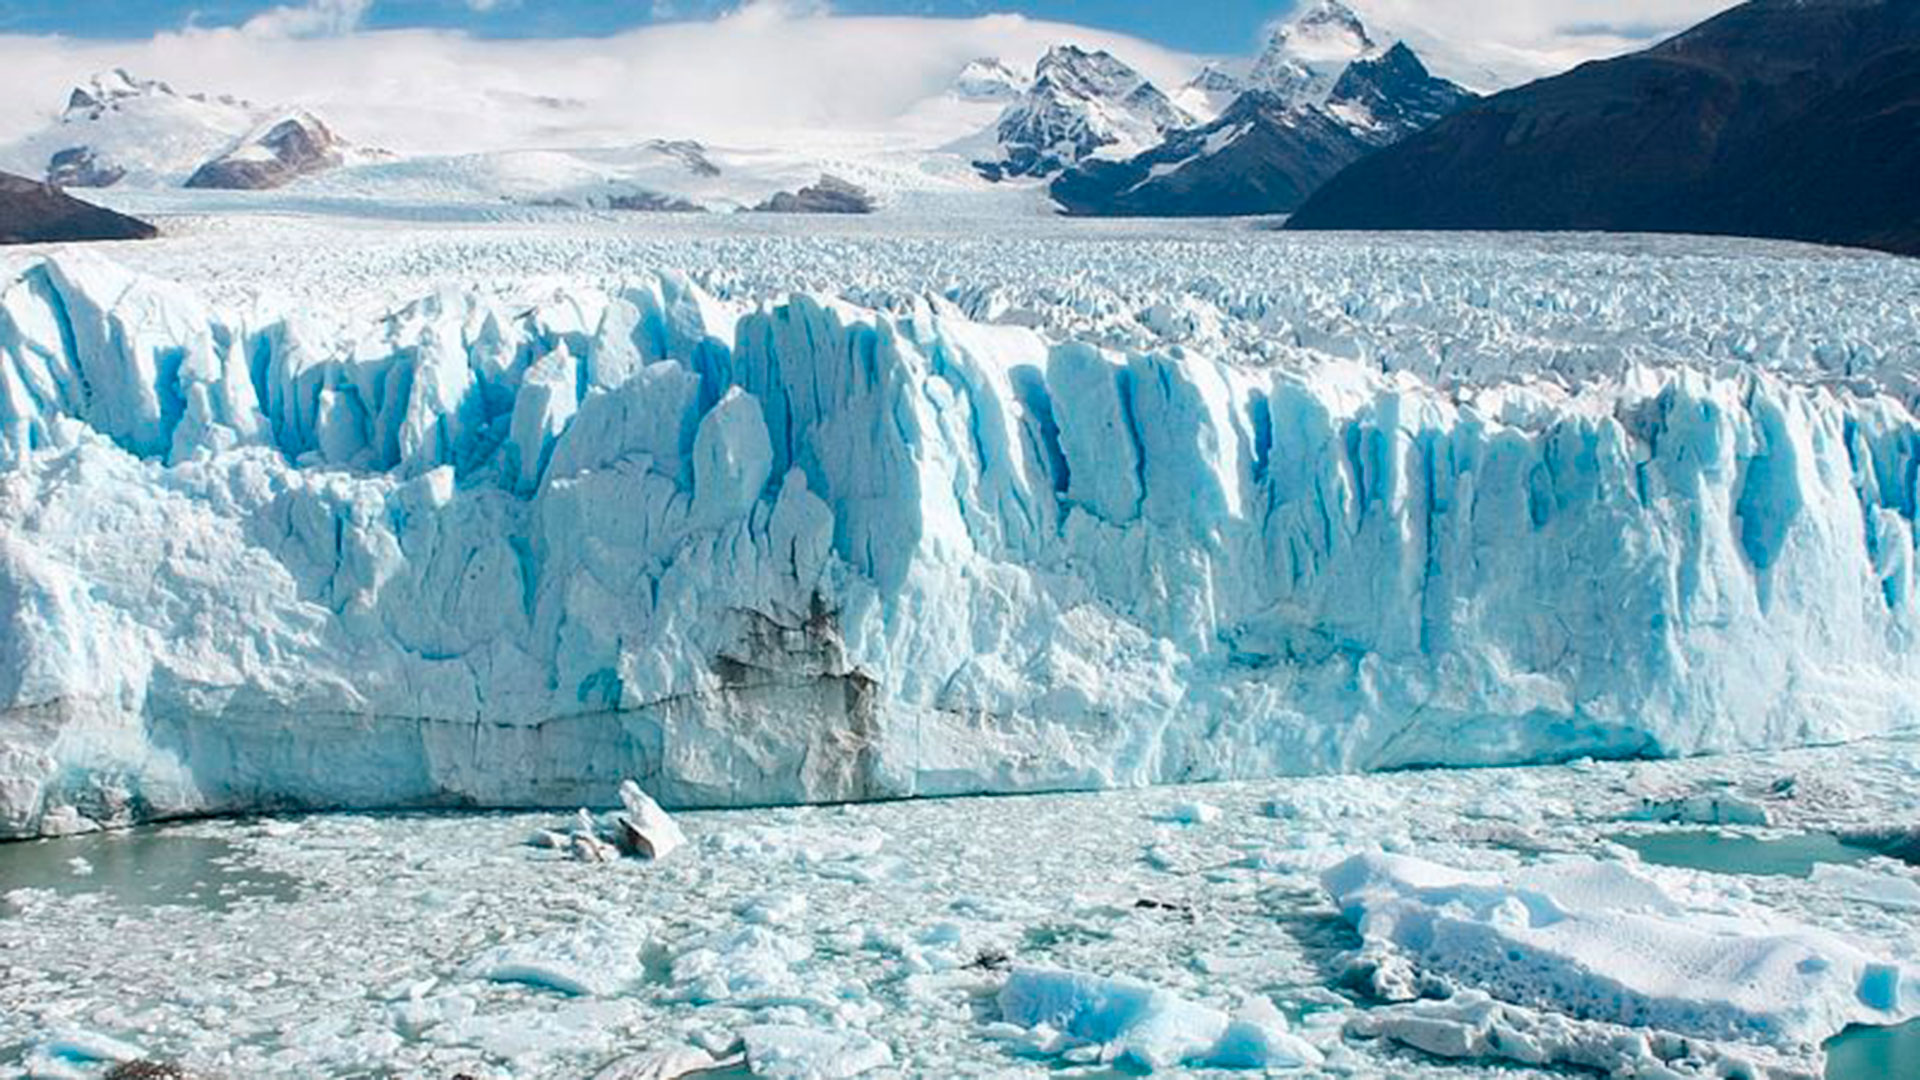 El glaciar Spegazzini en el Parque Nacional Los Glaciares, uno de los miles de glaciares de la zona. Foto: cortesía de Wikimedia.